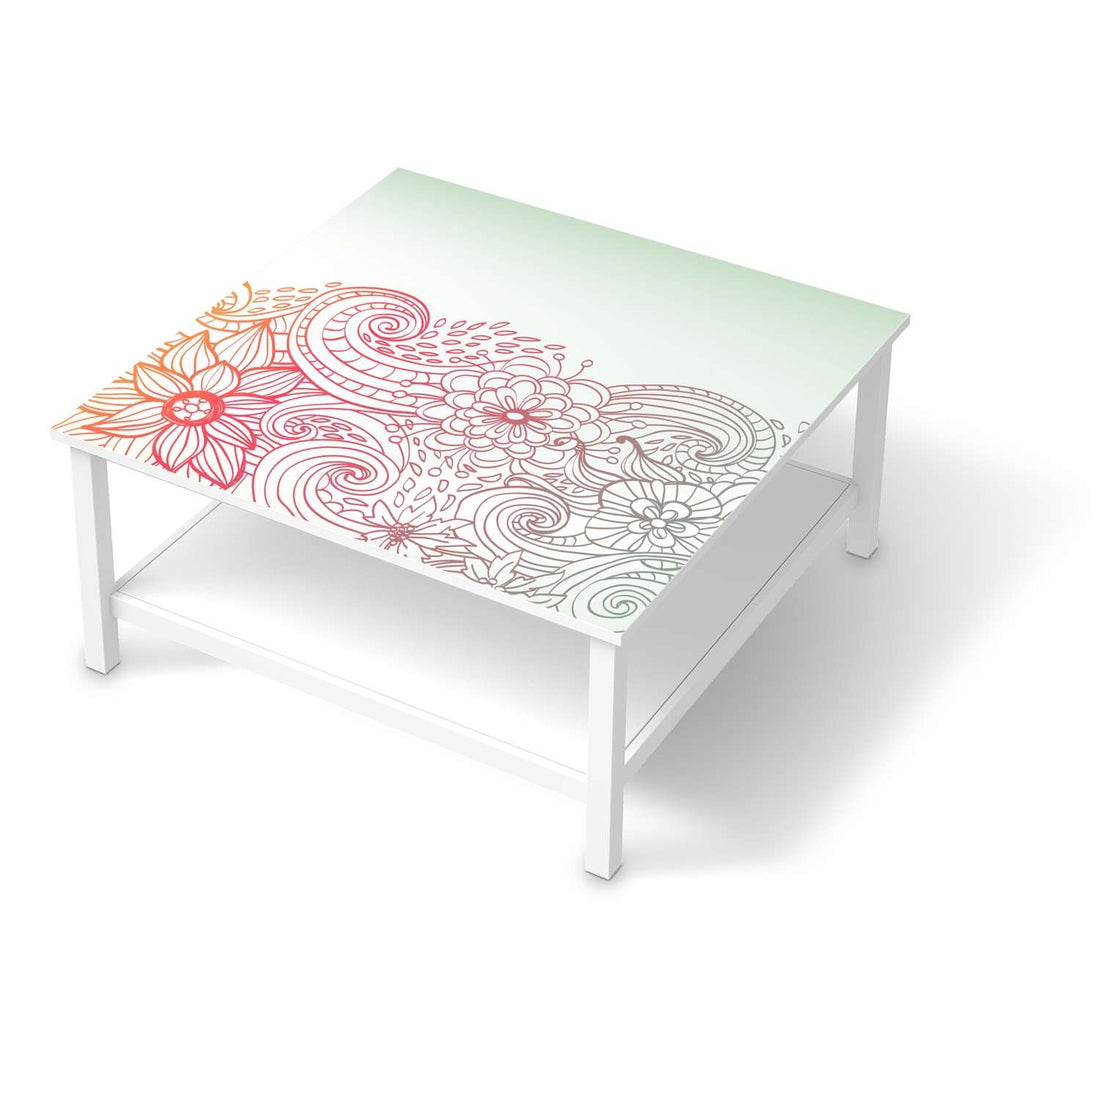 Klebefolie für Möbel Floral Doodle - IKEA Hemnes Couchtisch 90x90 cm  - weiss